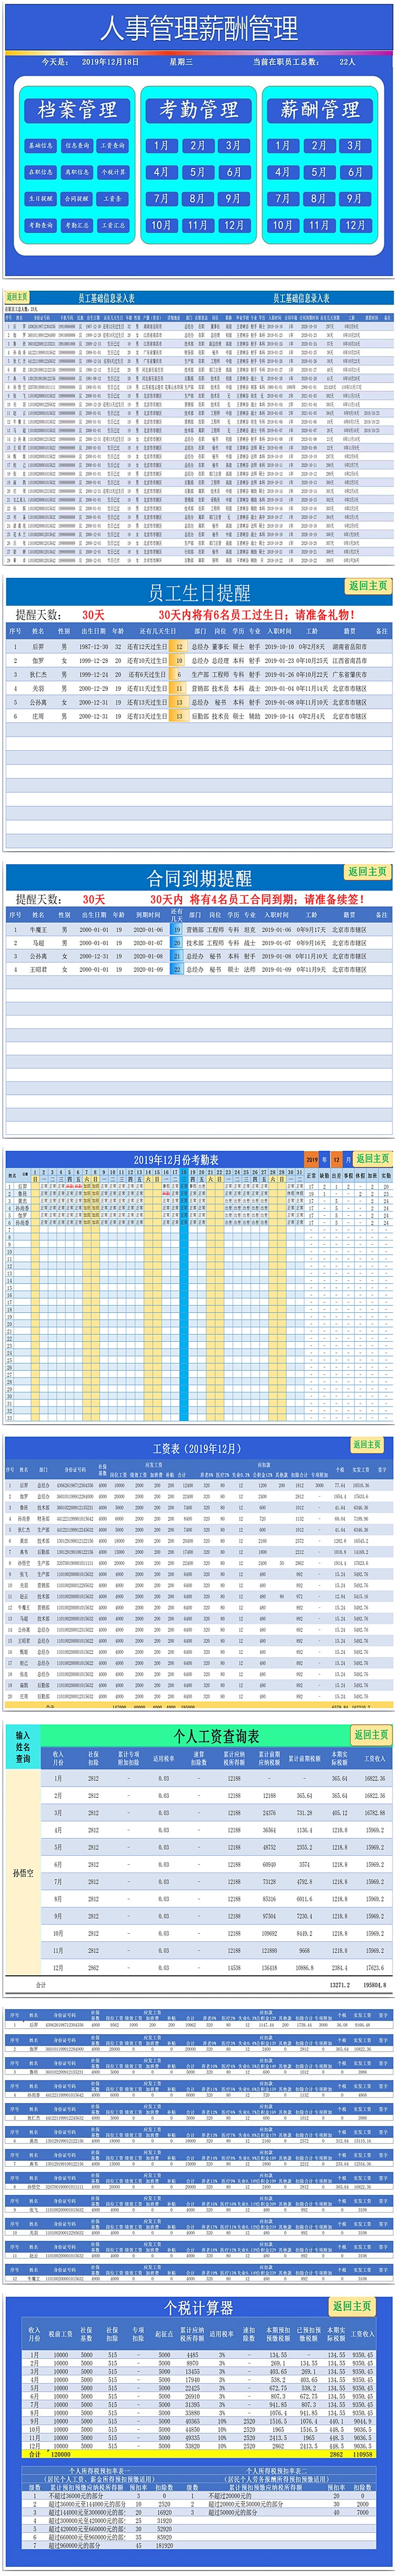 人事档案管理人事考勤管理人事薪酬管理系统Excel模板-1